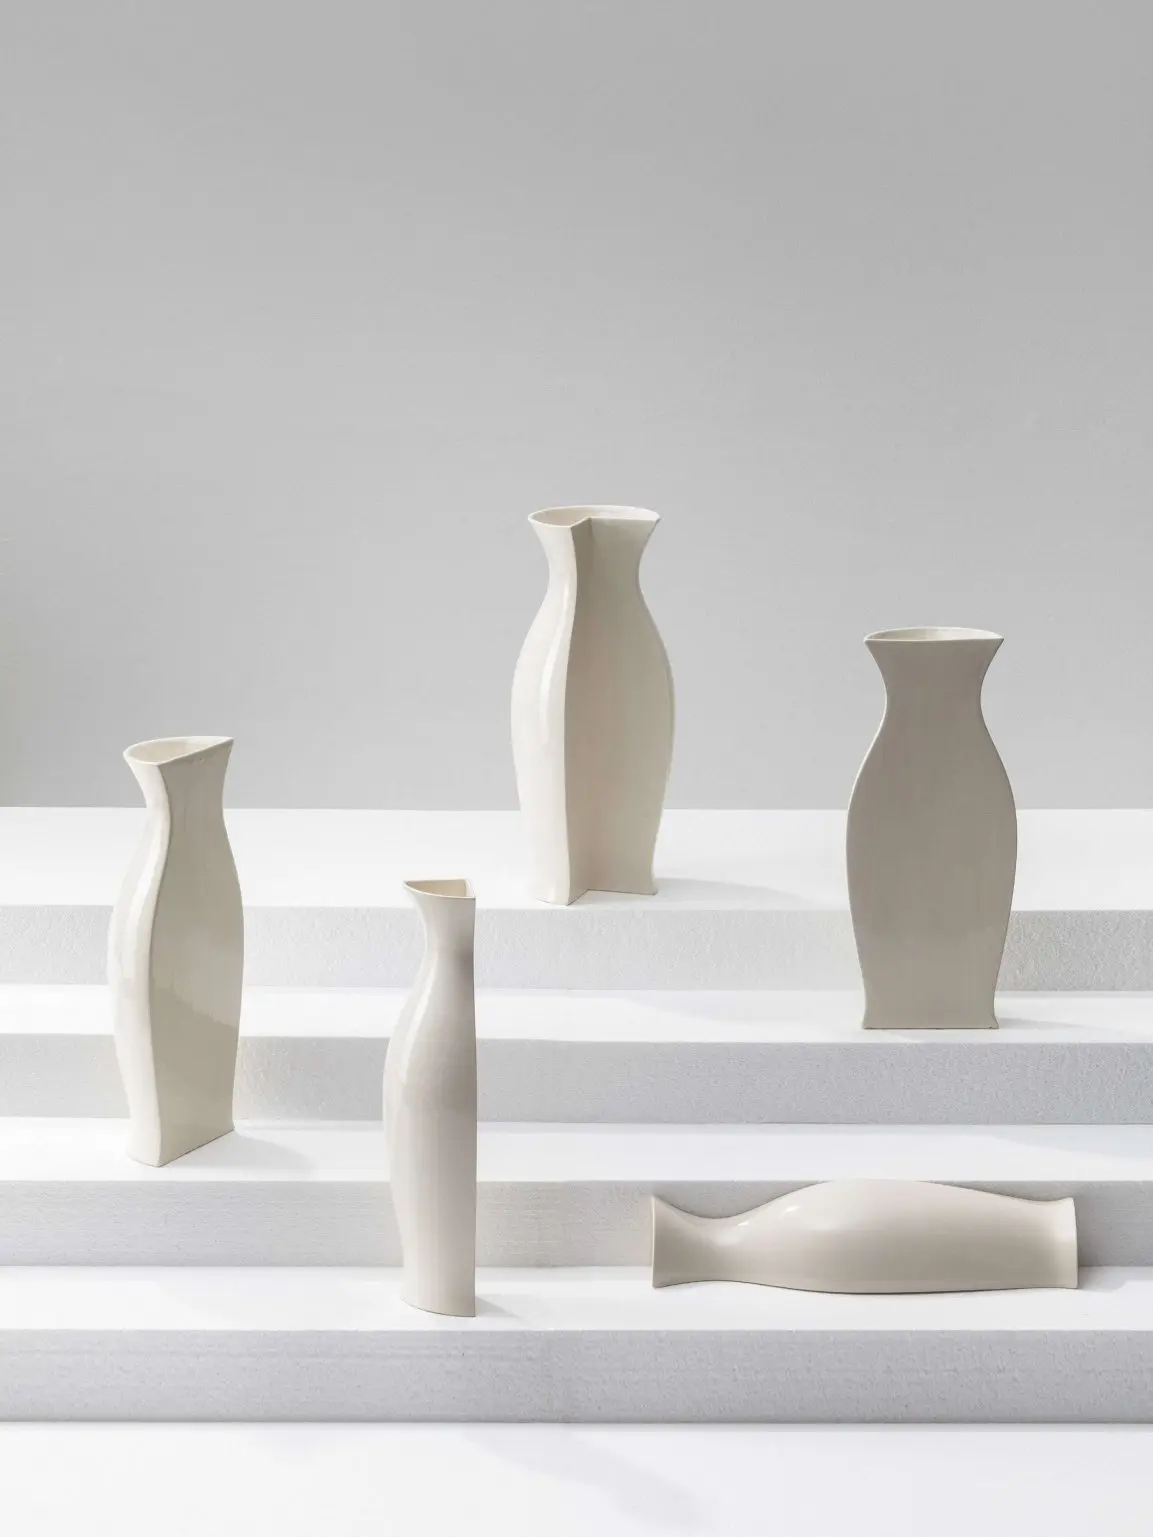 lemens Schillinger - Vases for corners - Leonhard Hilzensauer